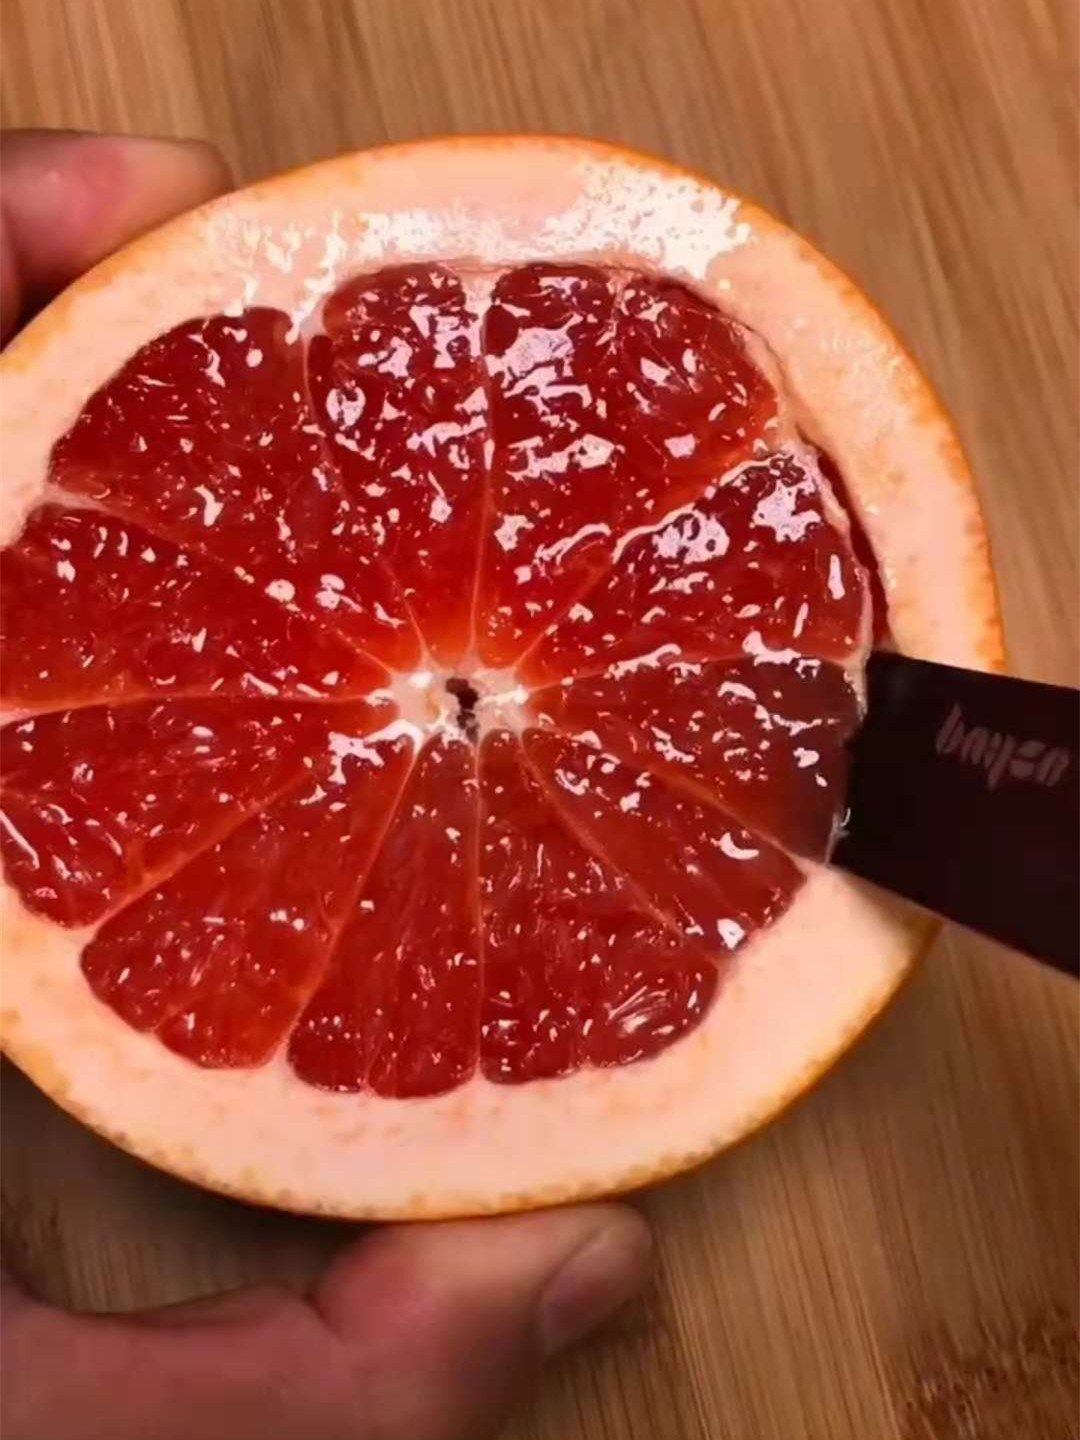 血橙切开剥开的图片图片